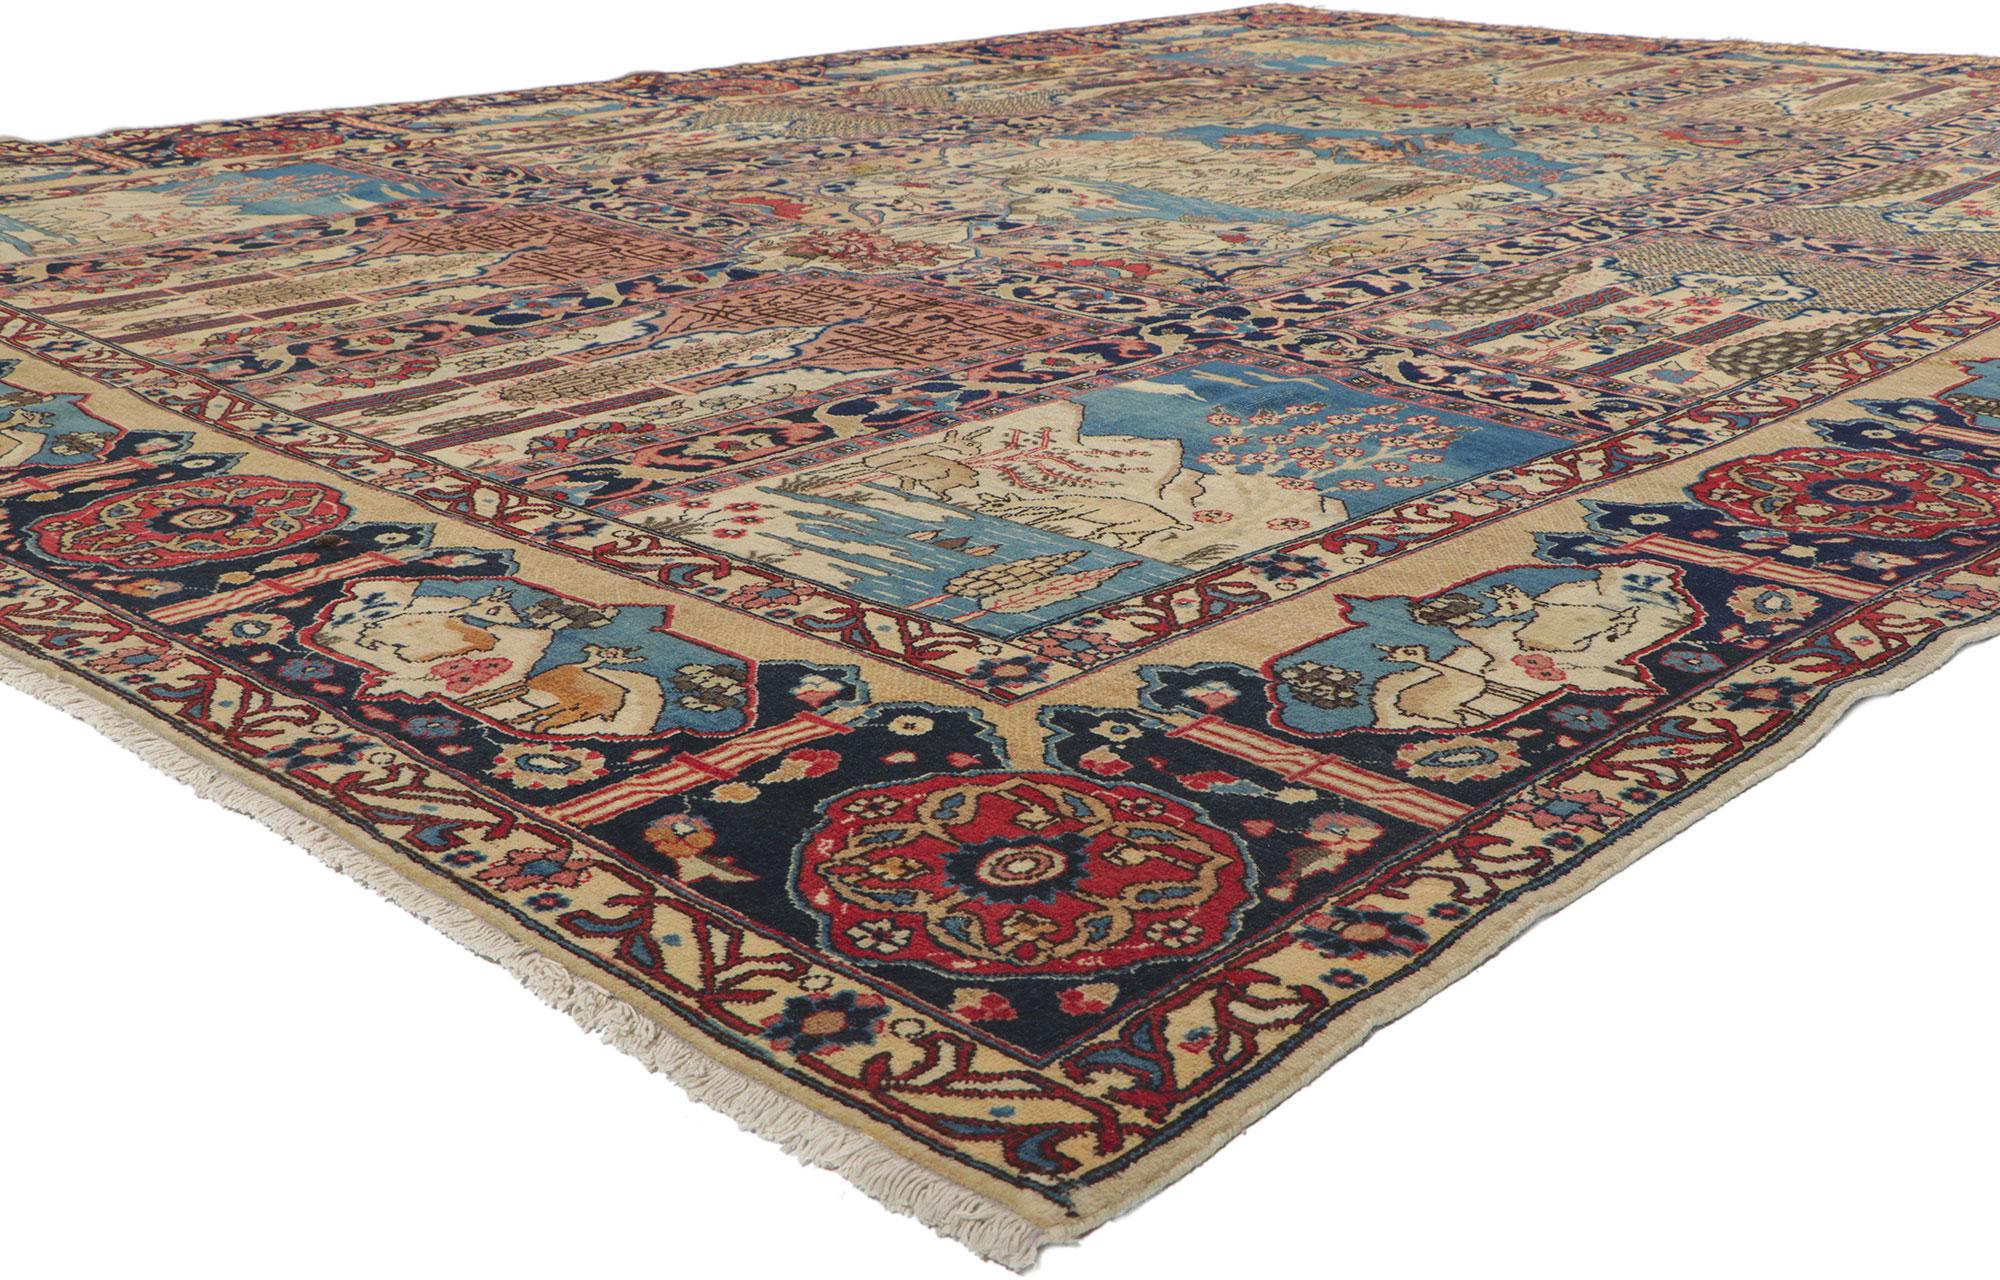 61212 Ancien tapis persan Tabriz avec motif de jardin, 11'03 x 15'00. Ce tapis Tabriz persan ancien en laine noué à la main présente un magnifique motif de jardin. La composition se caractérise par un panneau à compartiments présentant un